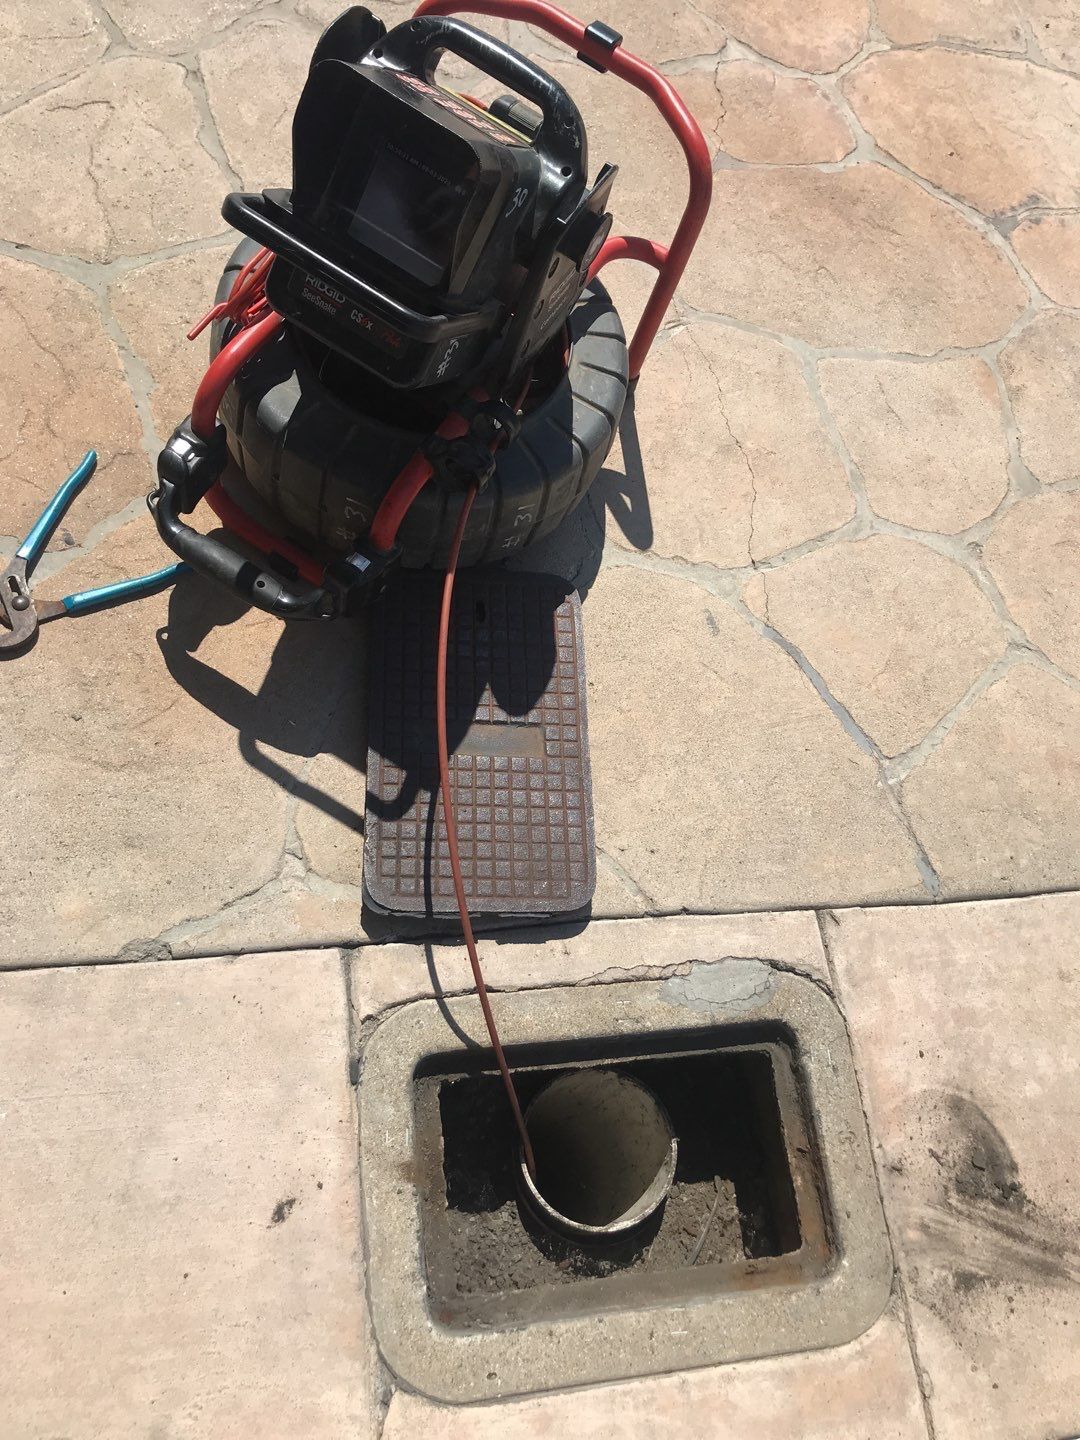 Sewer camera